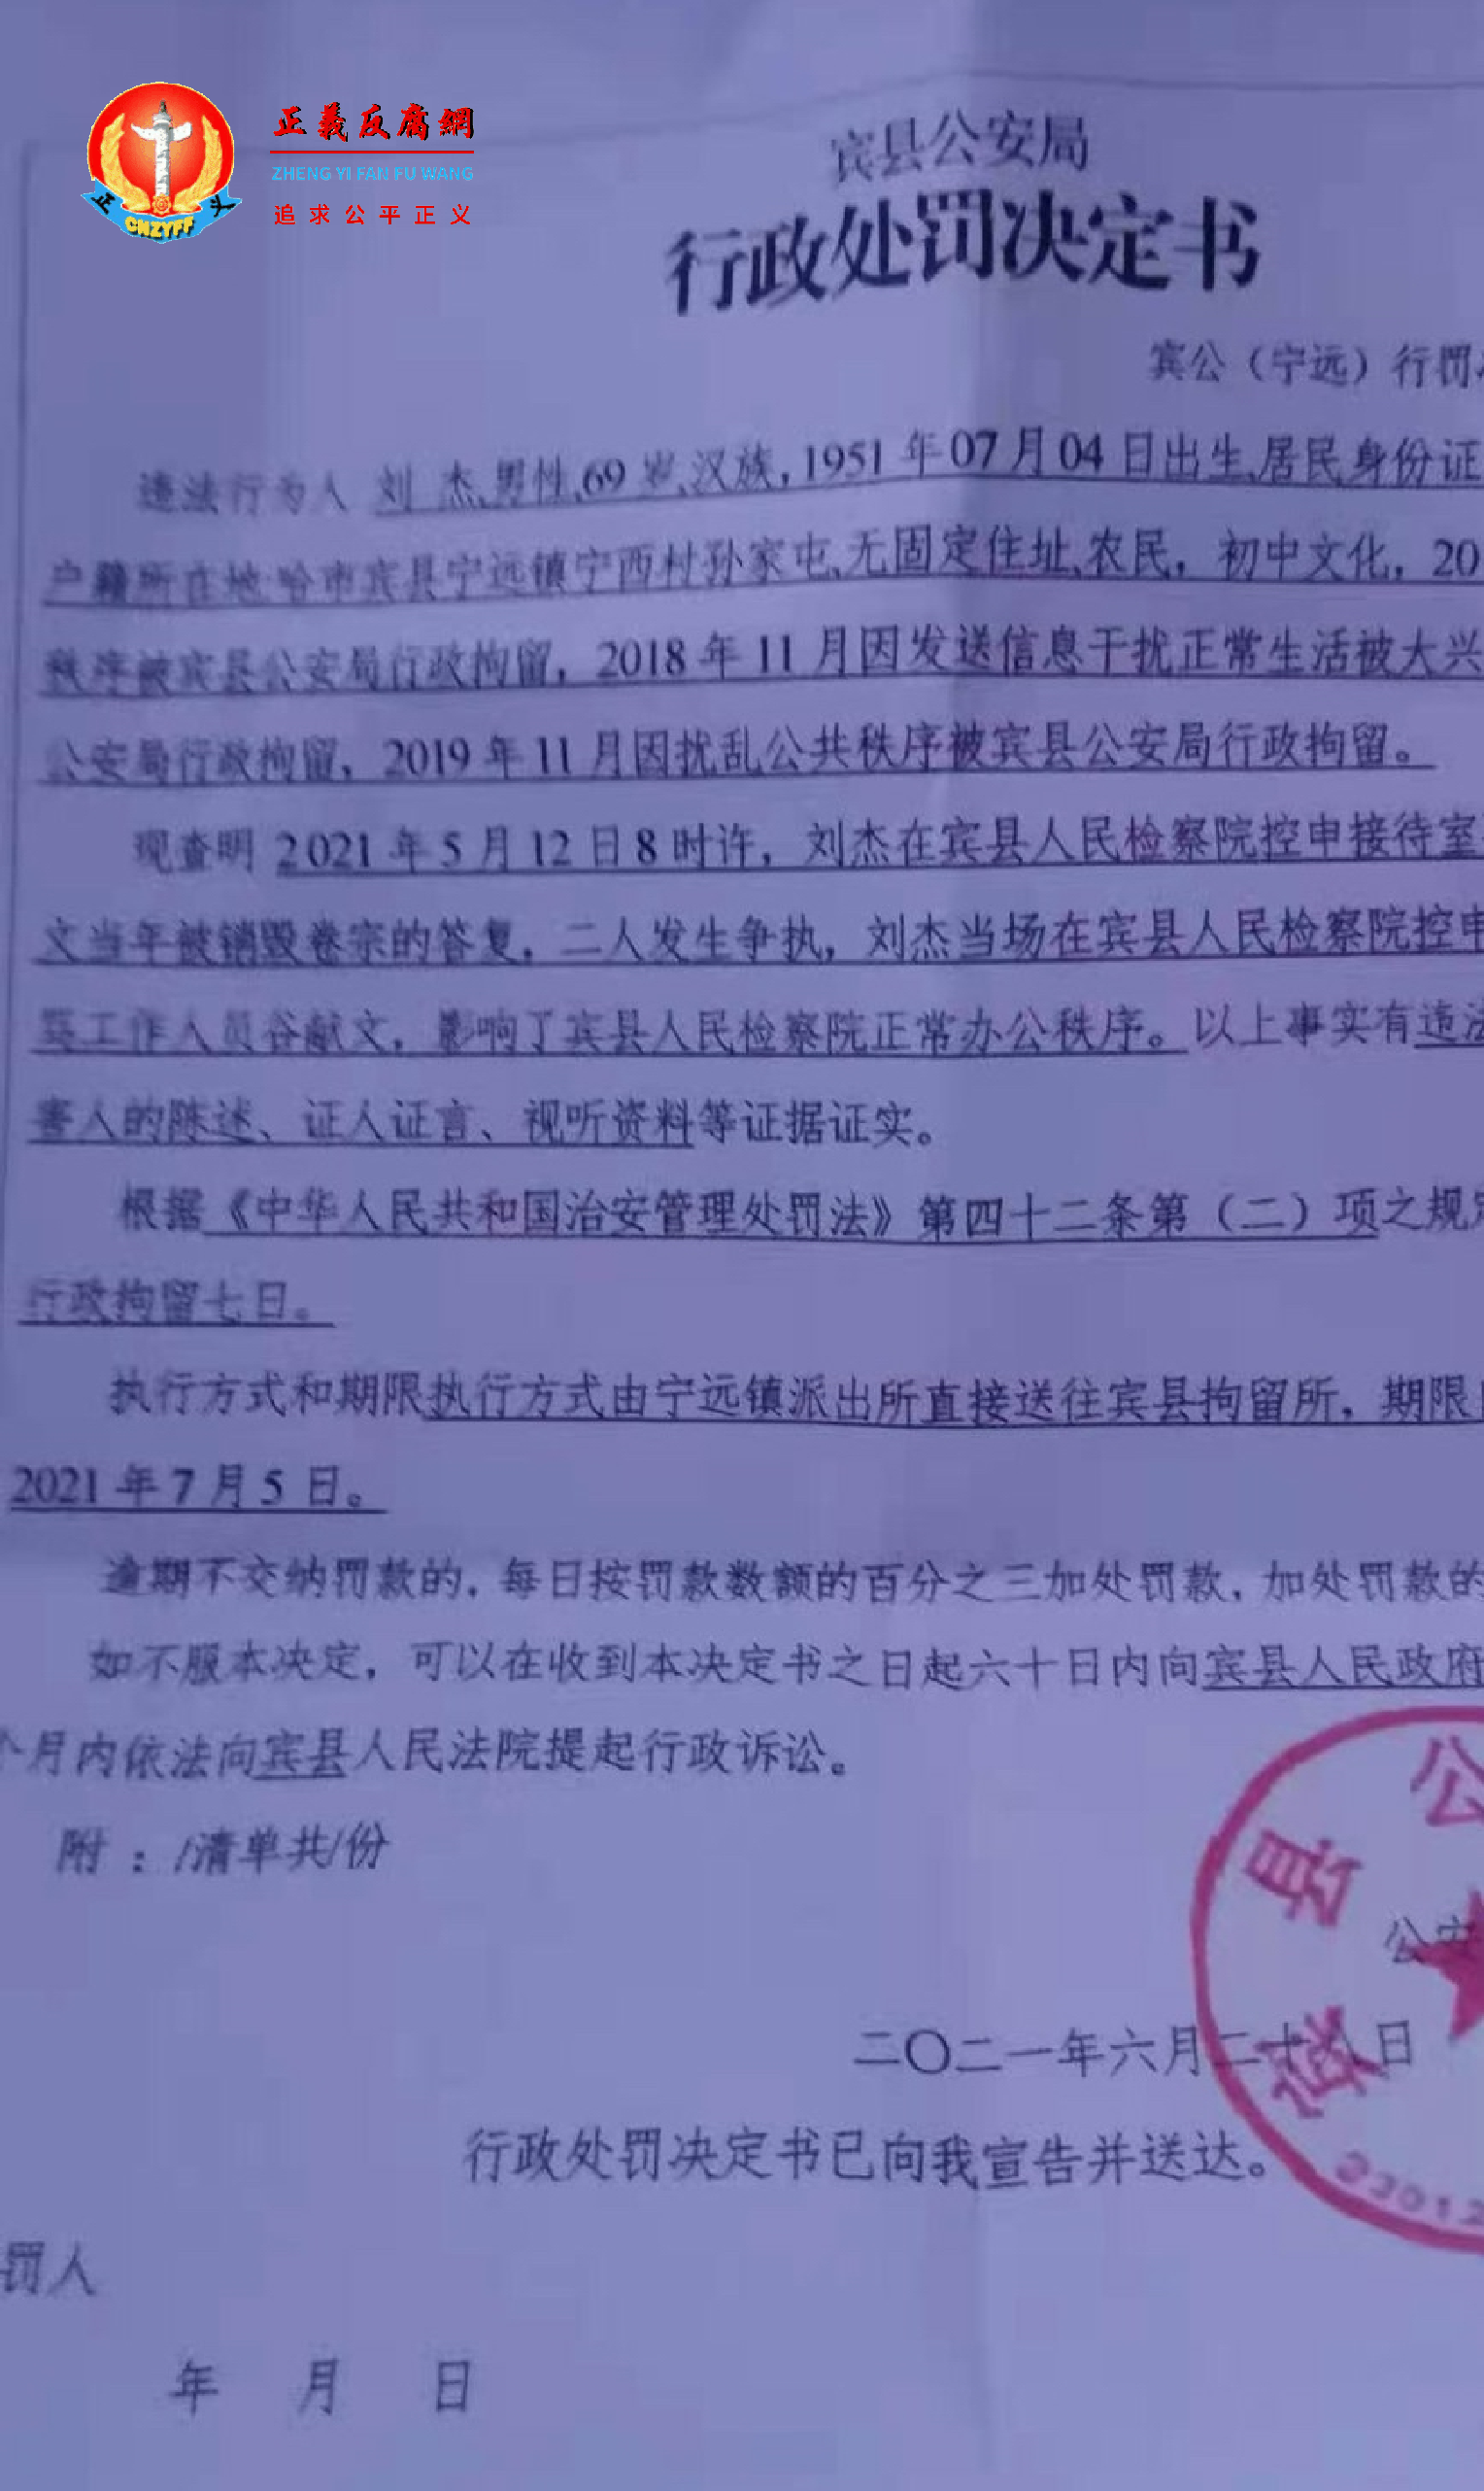 刘杰被非法拘禁20多天后再被行政拘留。.png